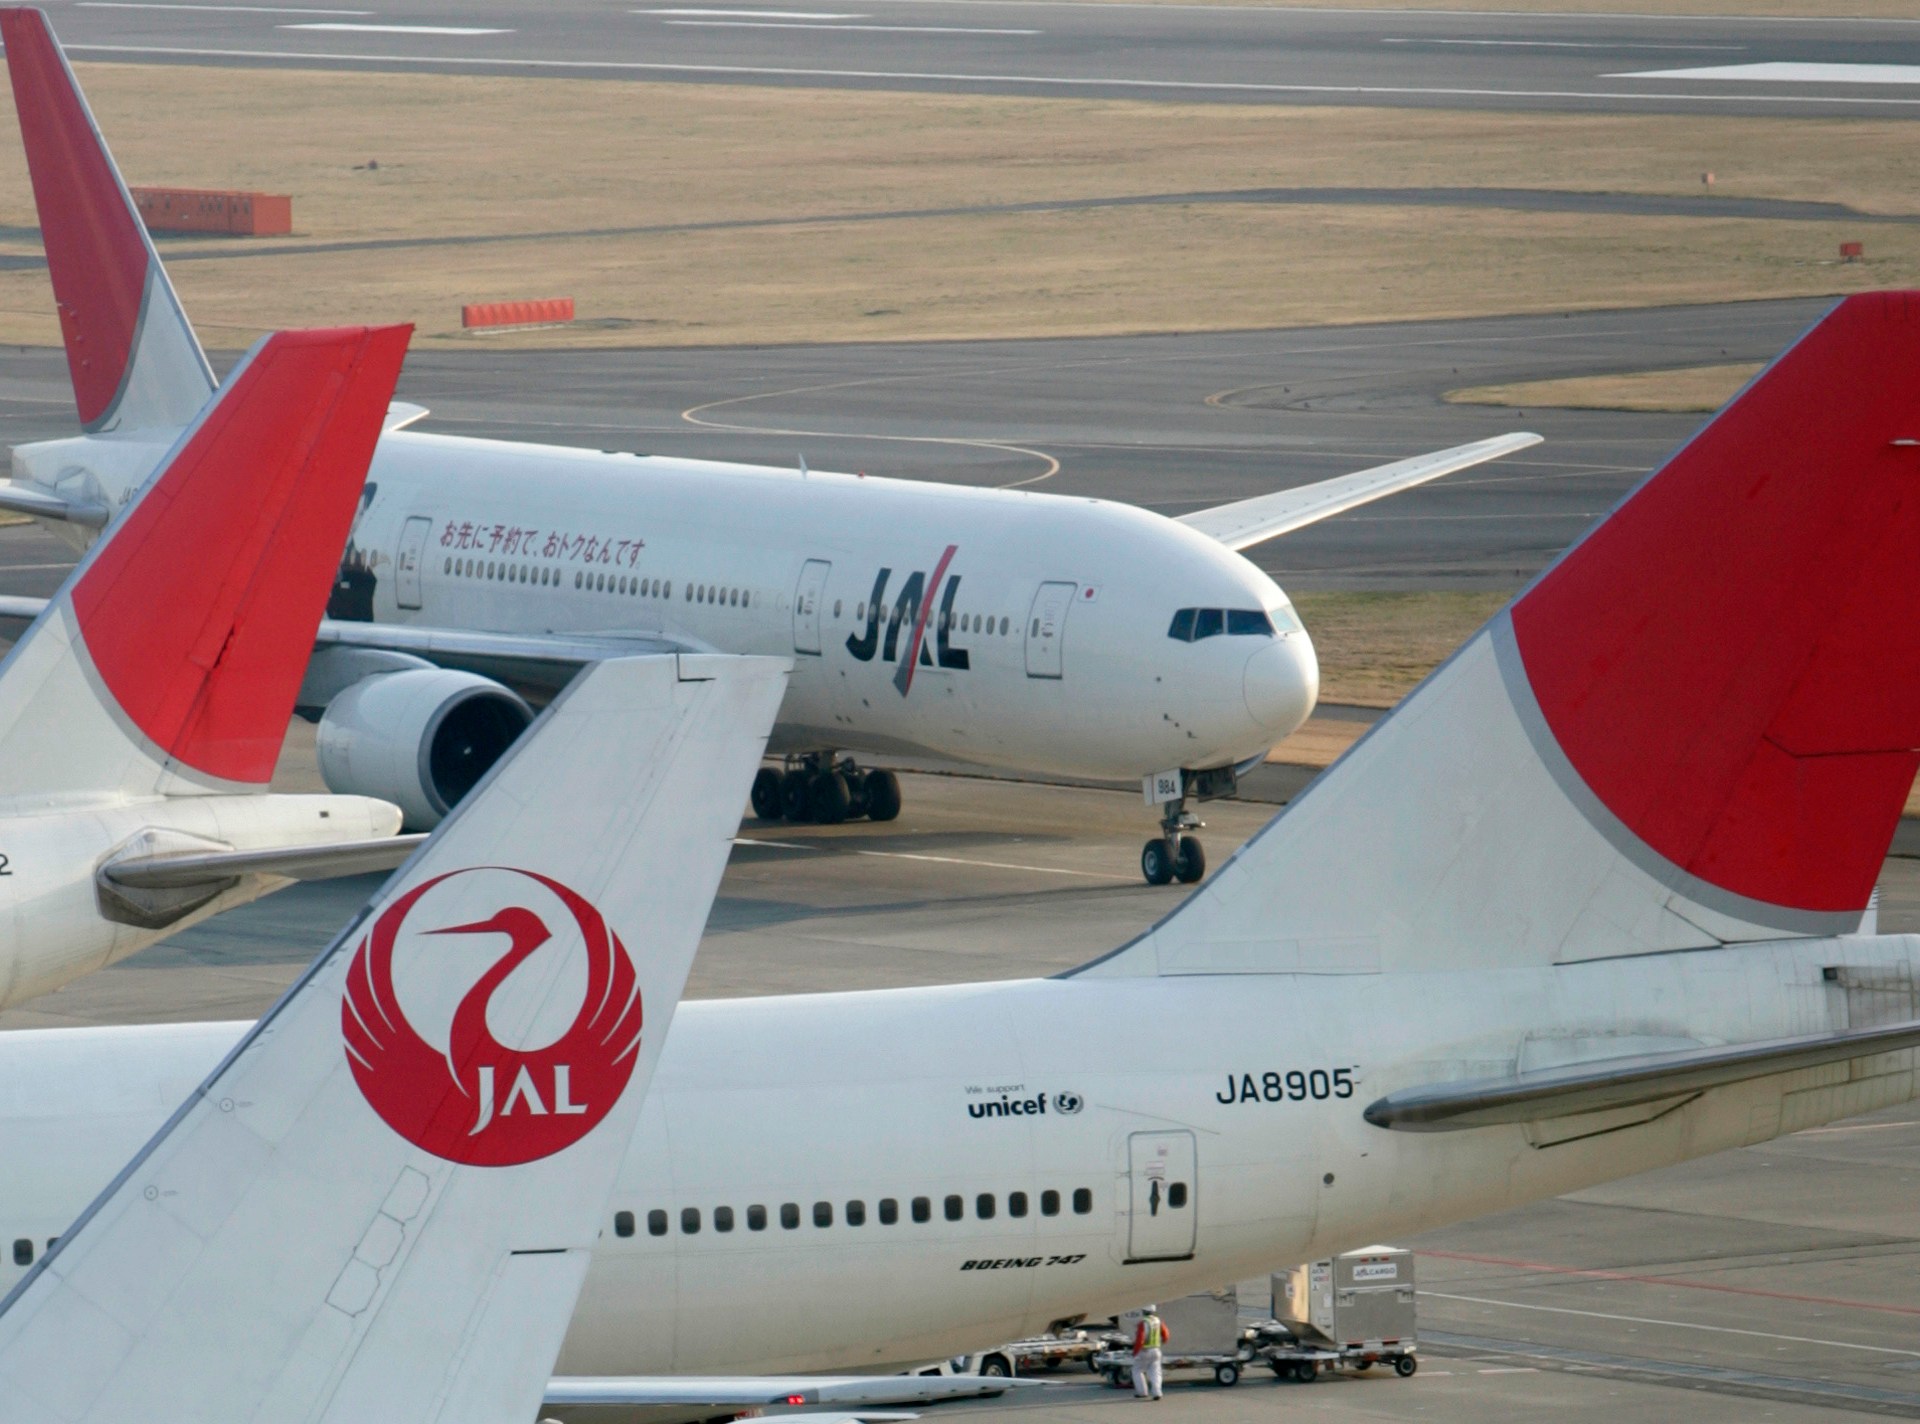 نيكي: اليابان قد تلغي اختبارات كوفيد للمسافرين  الأعمال والاقتصاد